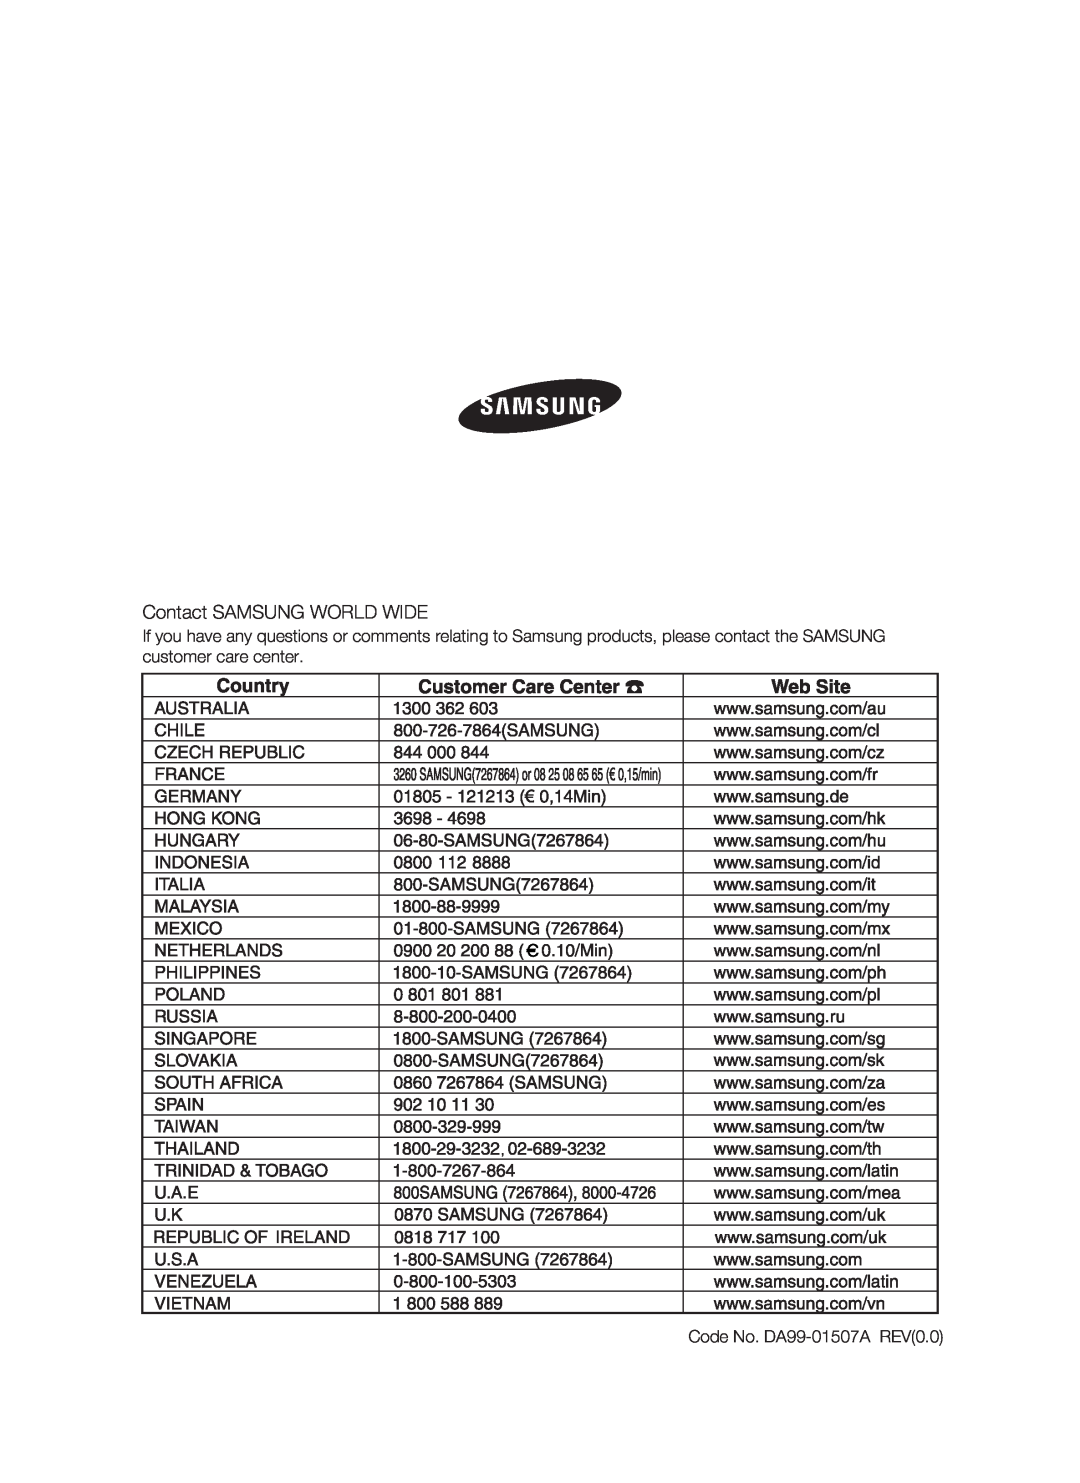 Samsung RSH1J, SRS610HDSS, RSH1K, RSH1N, RSH1B, RSH1D, RSH1F user manual Contact SAMSUNG WORLD WIDE, Code No. DA99-01507A REV0.0 